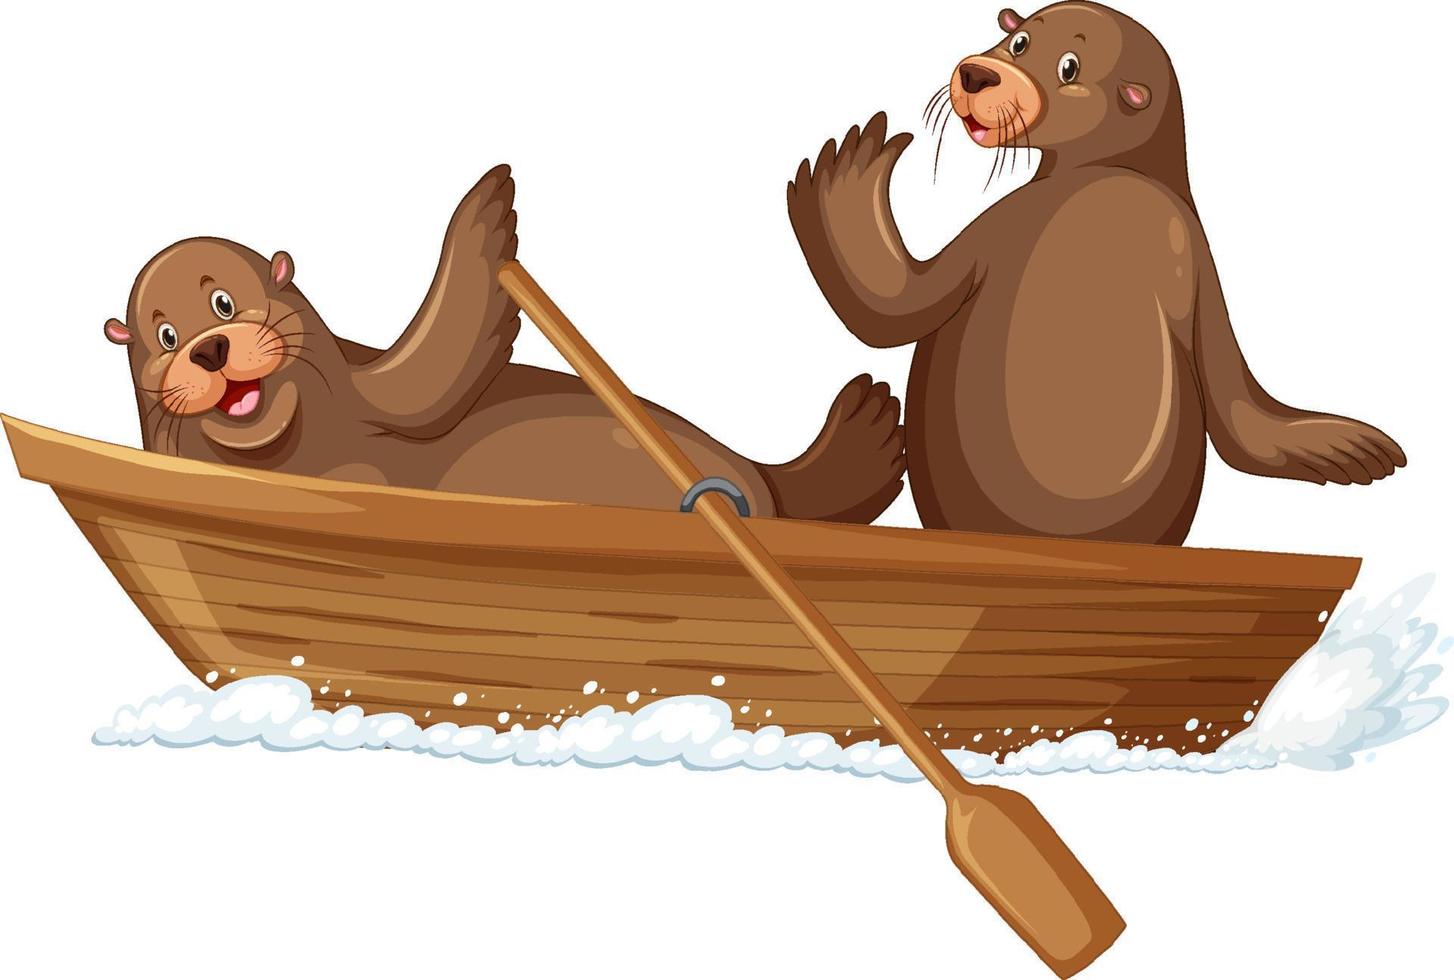 leones marinos en un bote de madera al estilo de las caricaturas vector